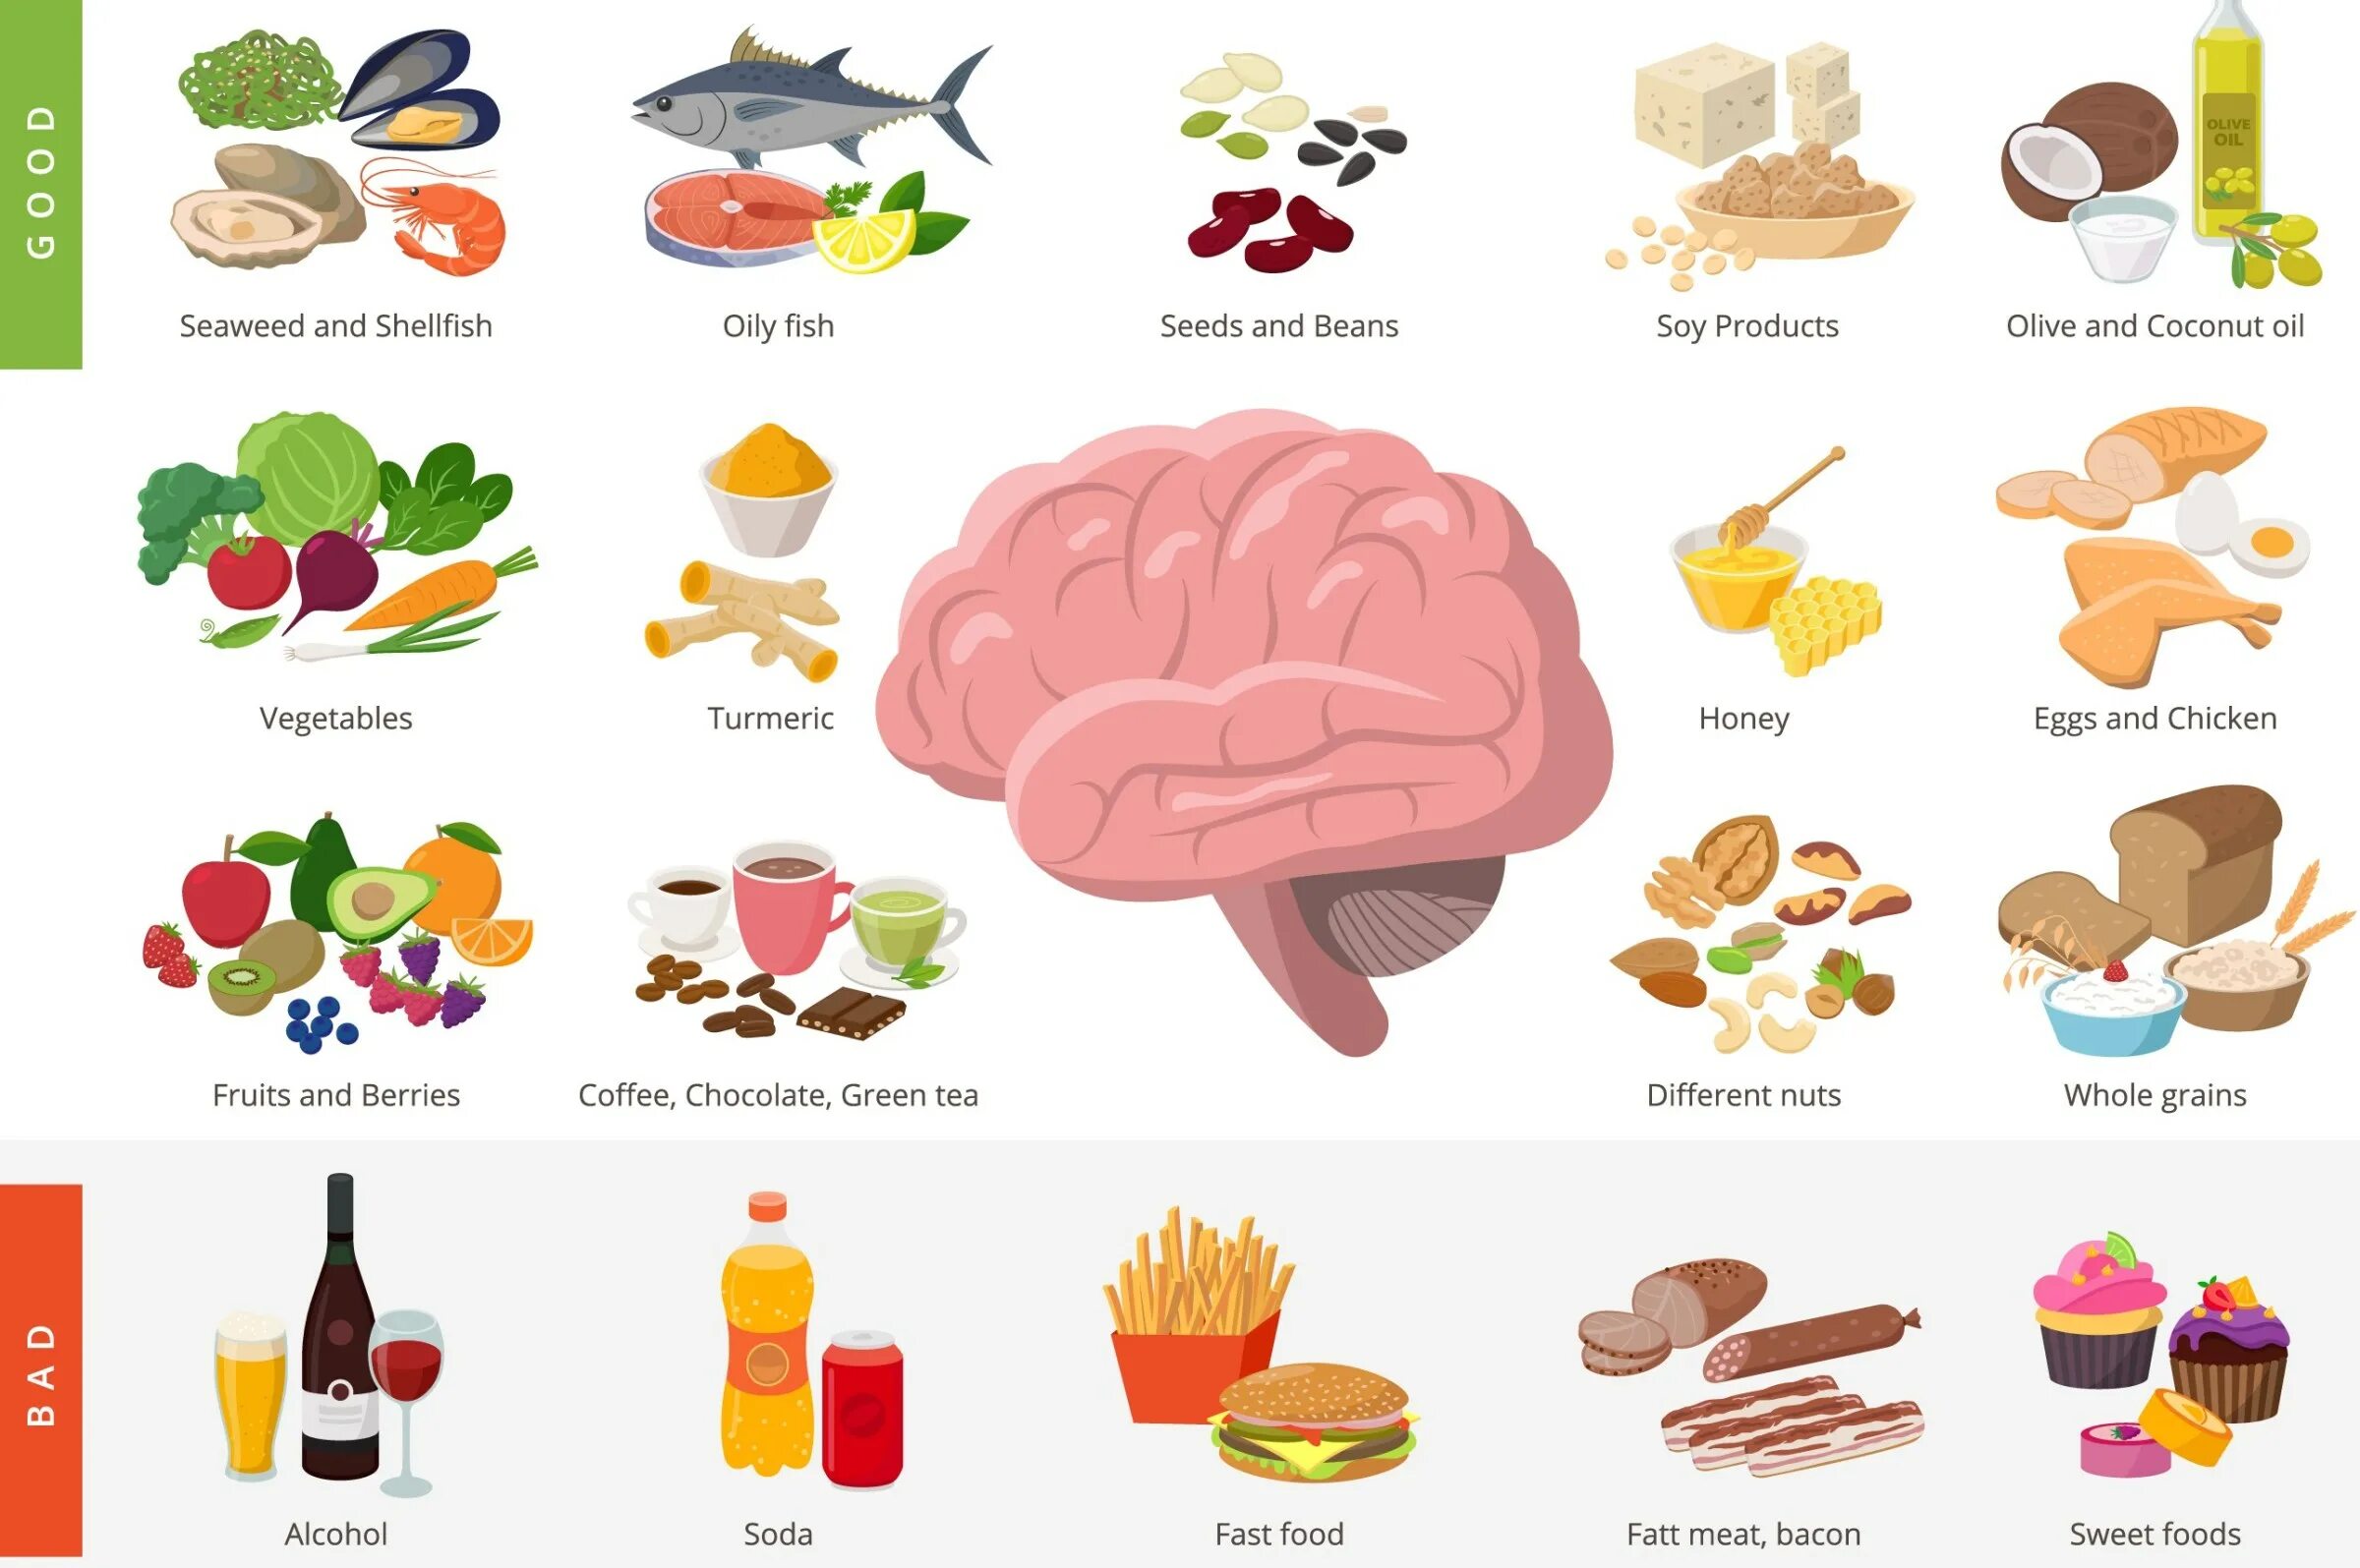 Еда от деменции. Профилактика Альцгеймера продукты. Питание для профилактики болезни Альцгеймера. Диета при болезни Альцгеймера. Профилактика Альцгеймера питание.